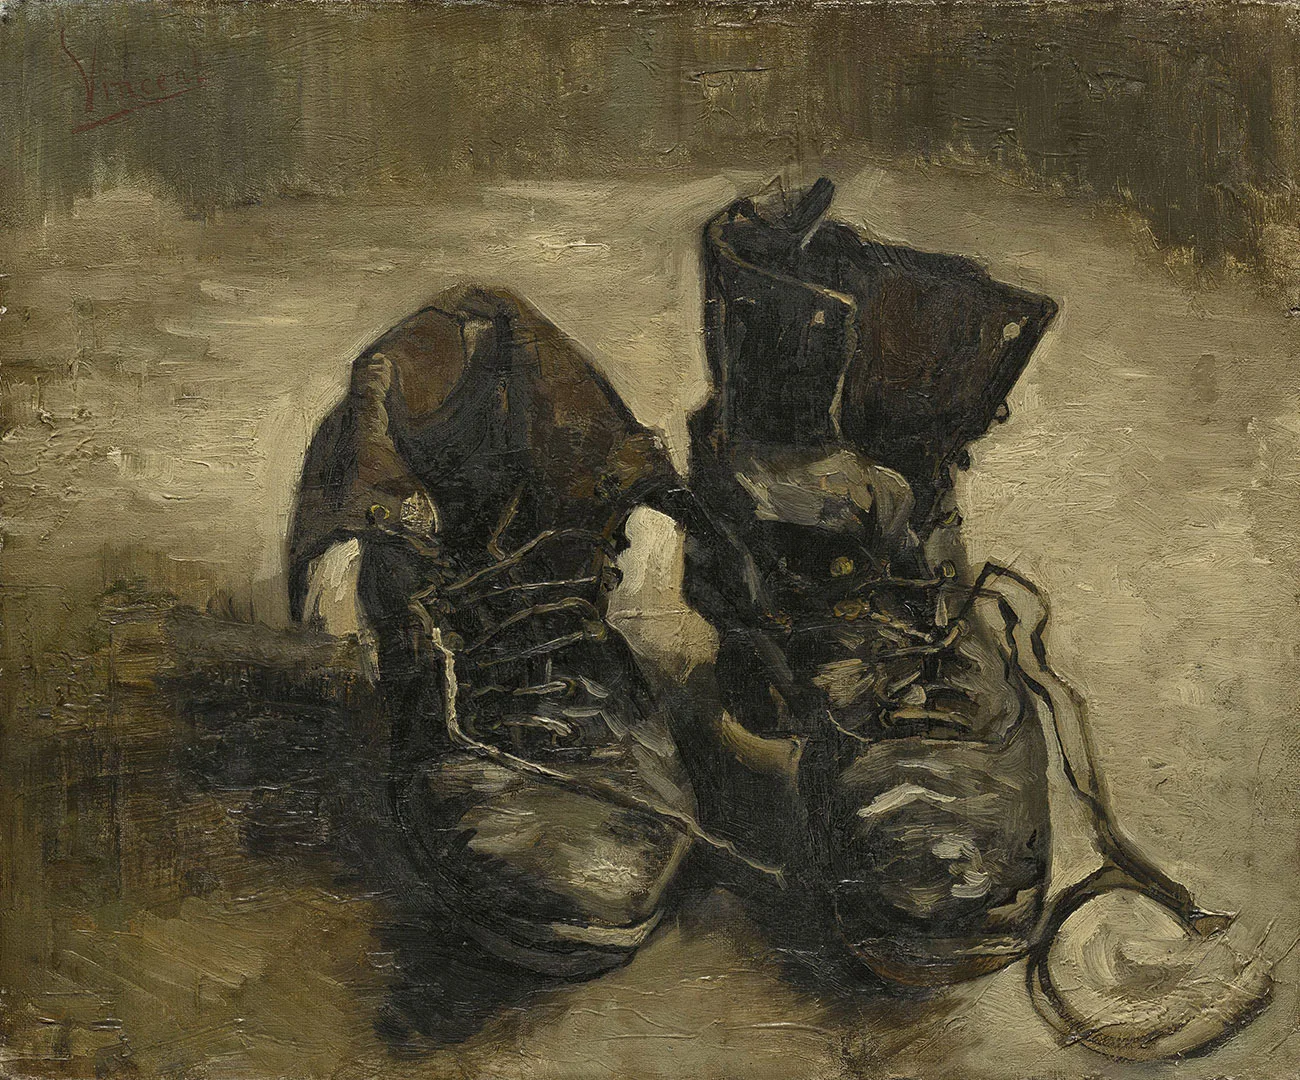 梵高油画静物作品《一双鞋》